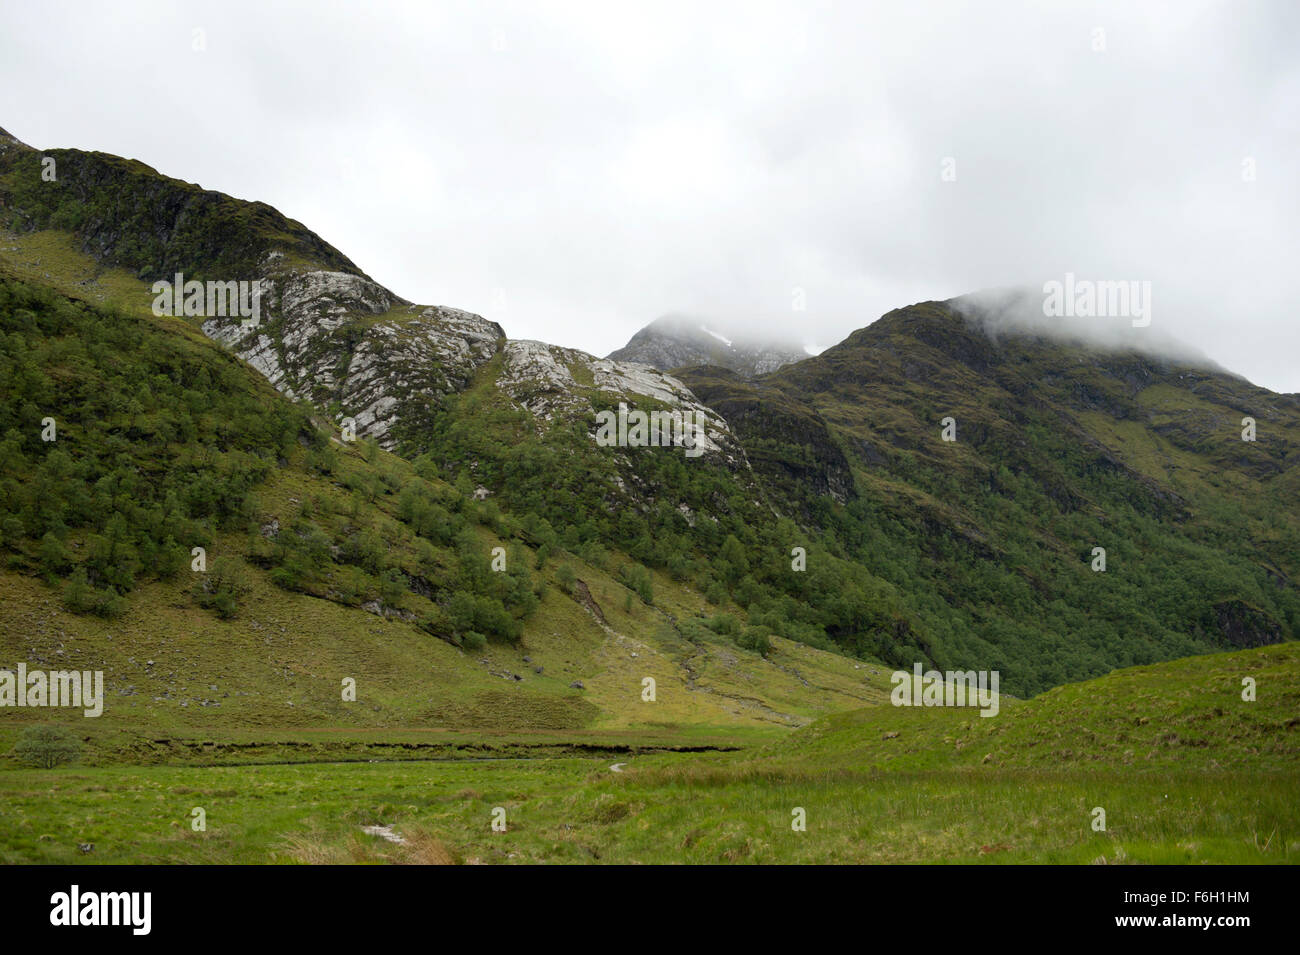 Blickte Glen Nevis an einem typisch schottischen kalten und nebligen Tag, wo die Gipfel der umliegenden Berge sind versteckt Stockfoto